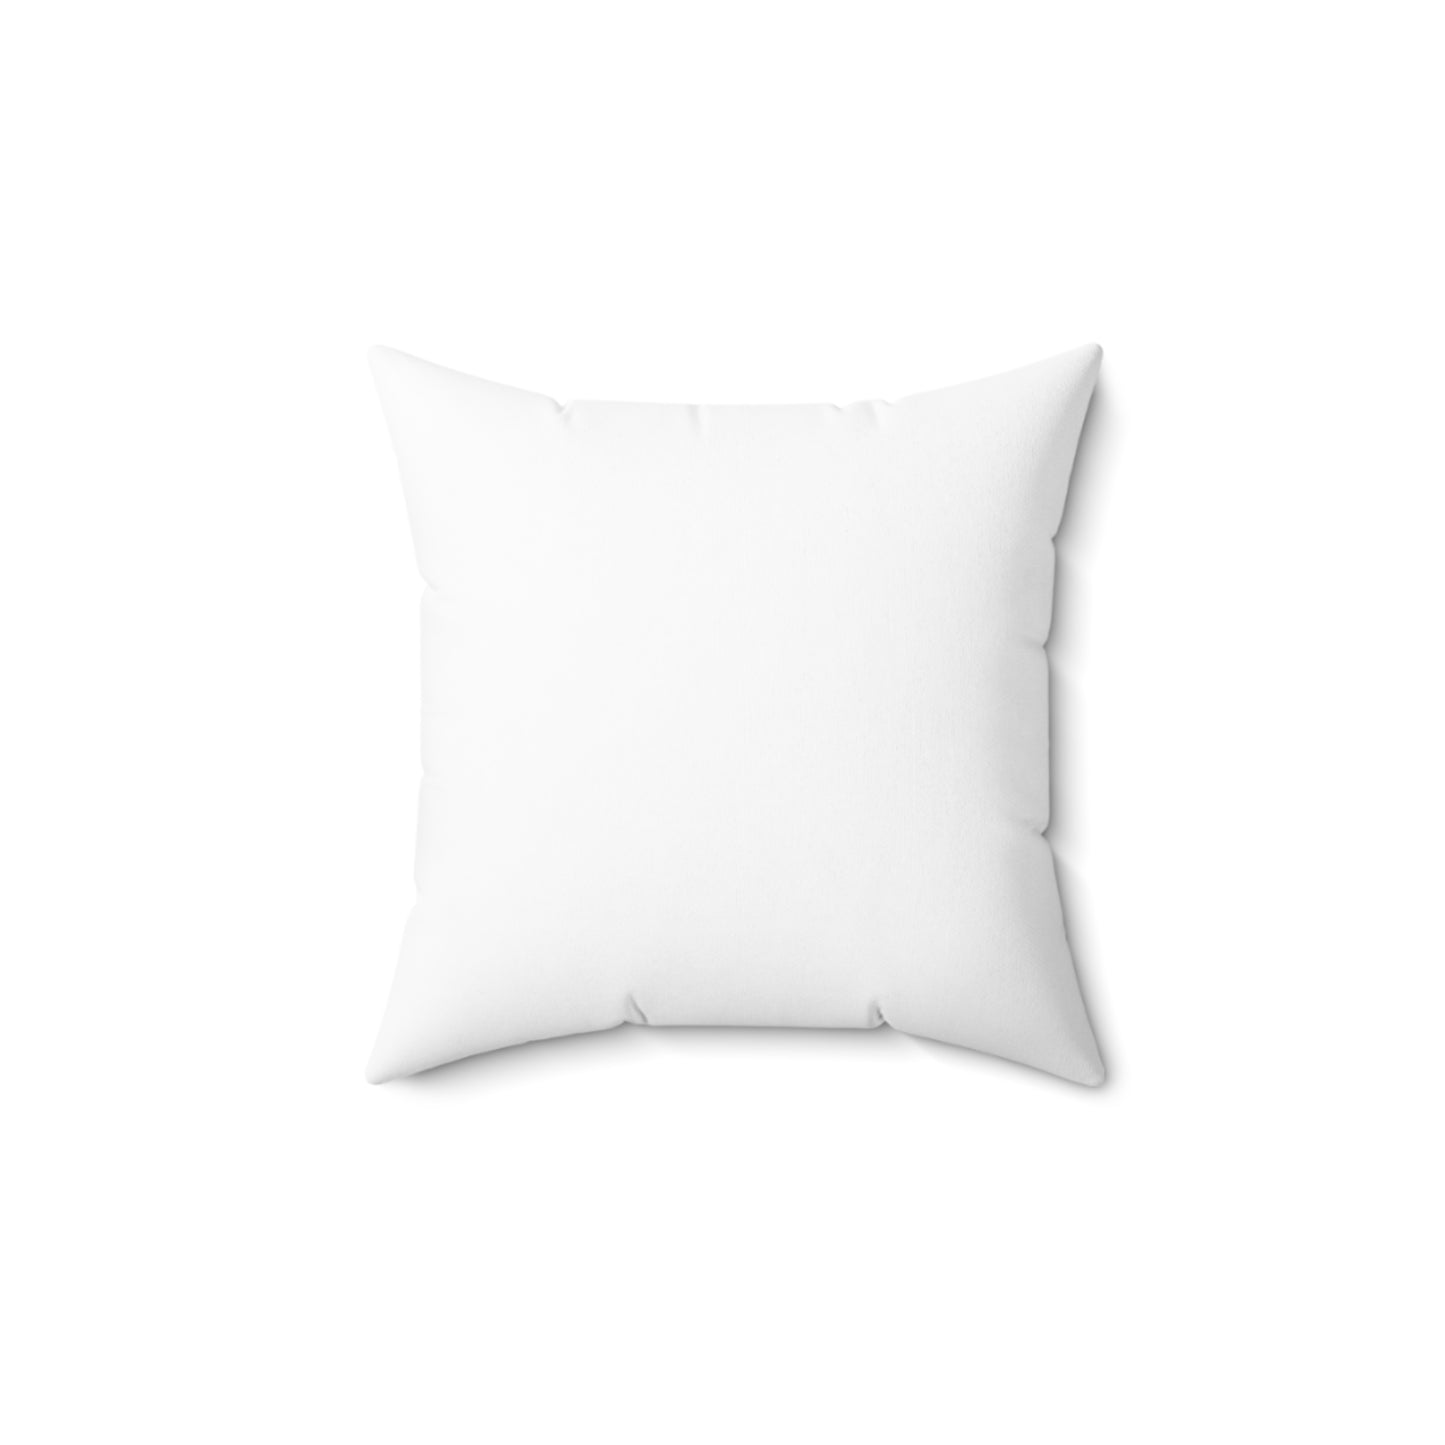 JVC Spun Polyester Square Pillow